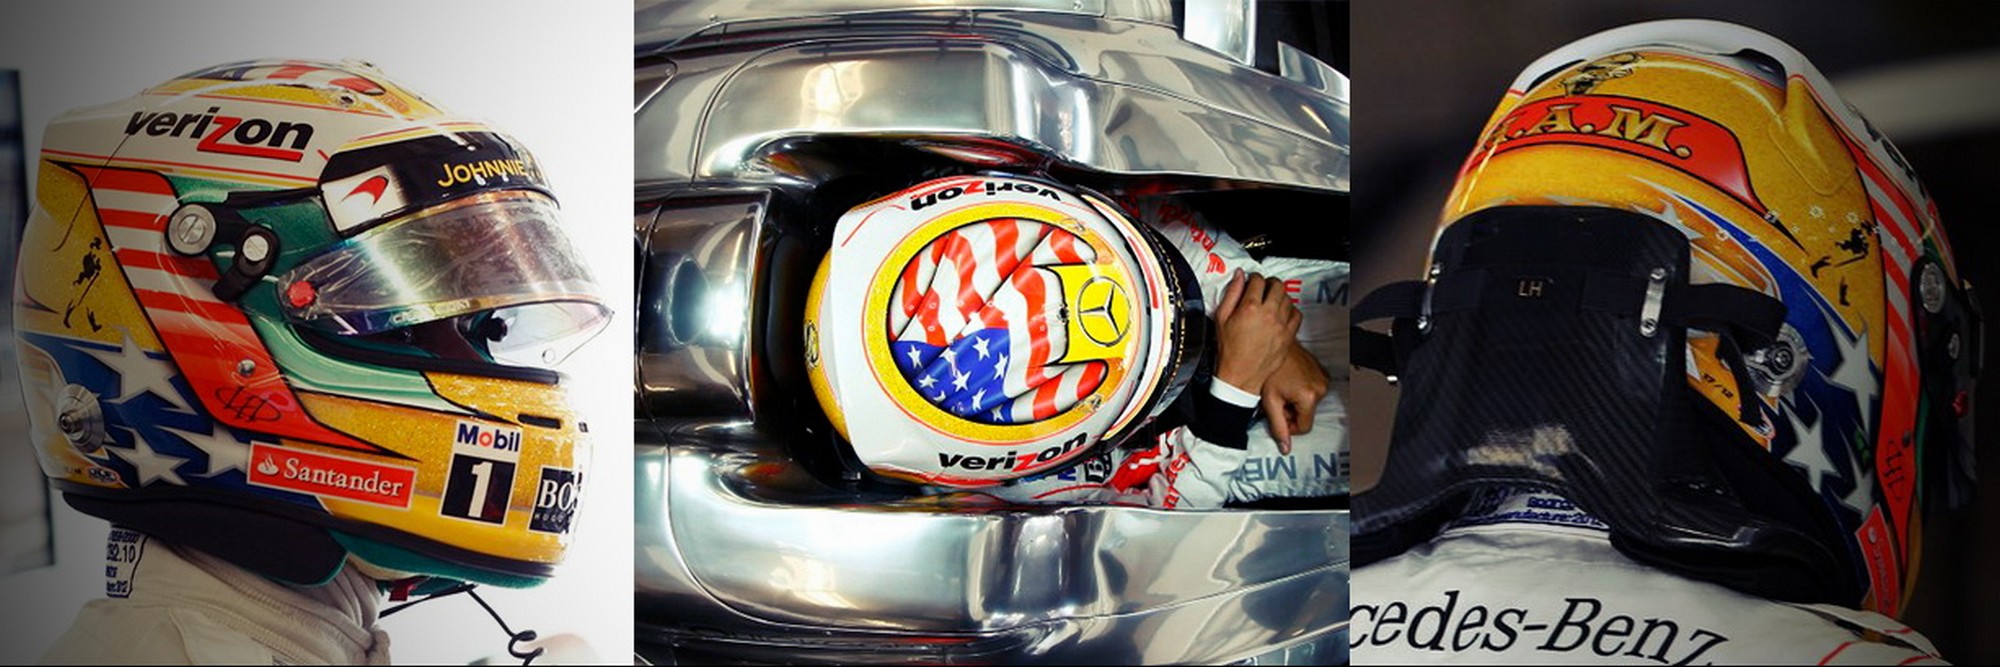 Шлем Льюиса Хэмилтона на Гран-При США 2012 | 2012 USA Grand Prix helmet of Lewis Hamilton